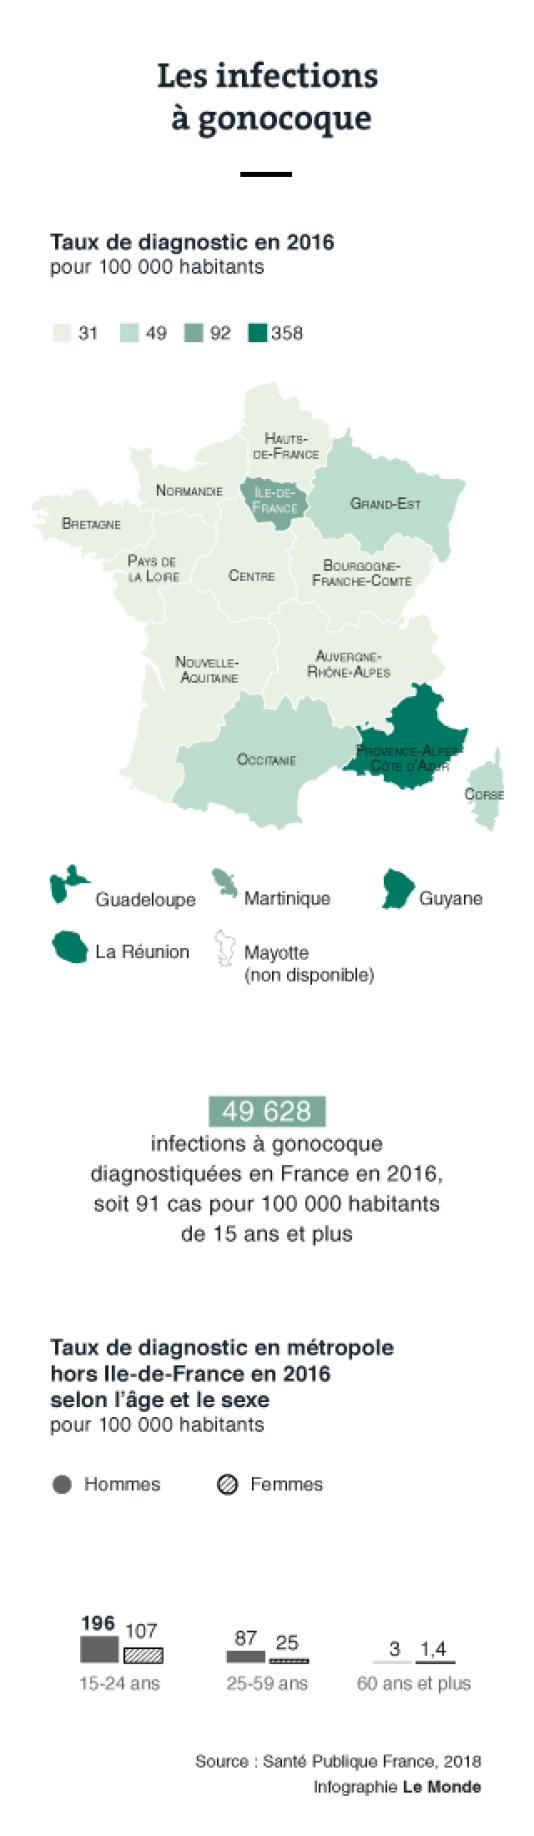 Infections à gonocoque en 2016 en France